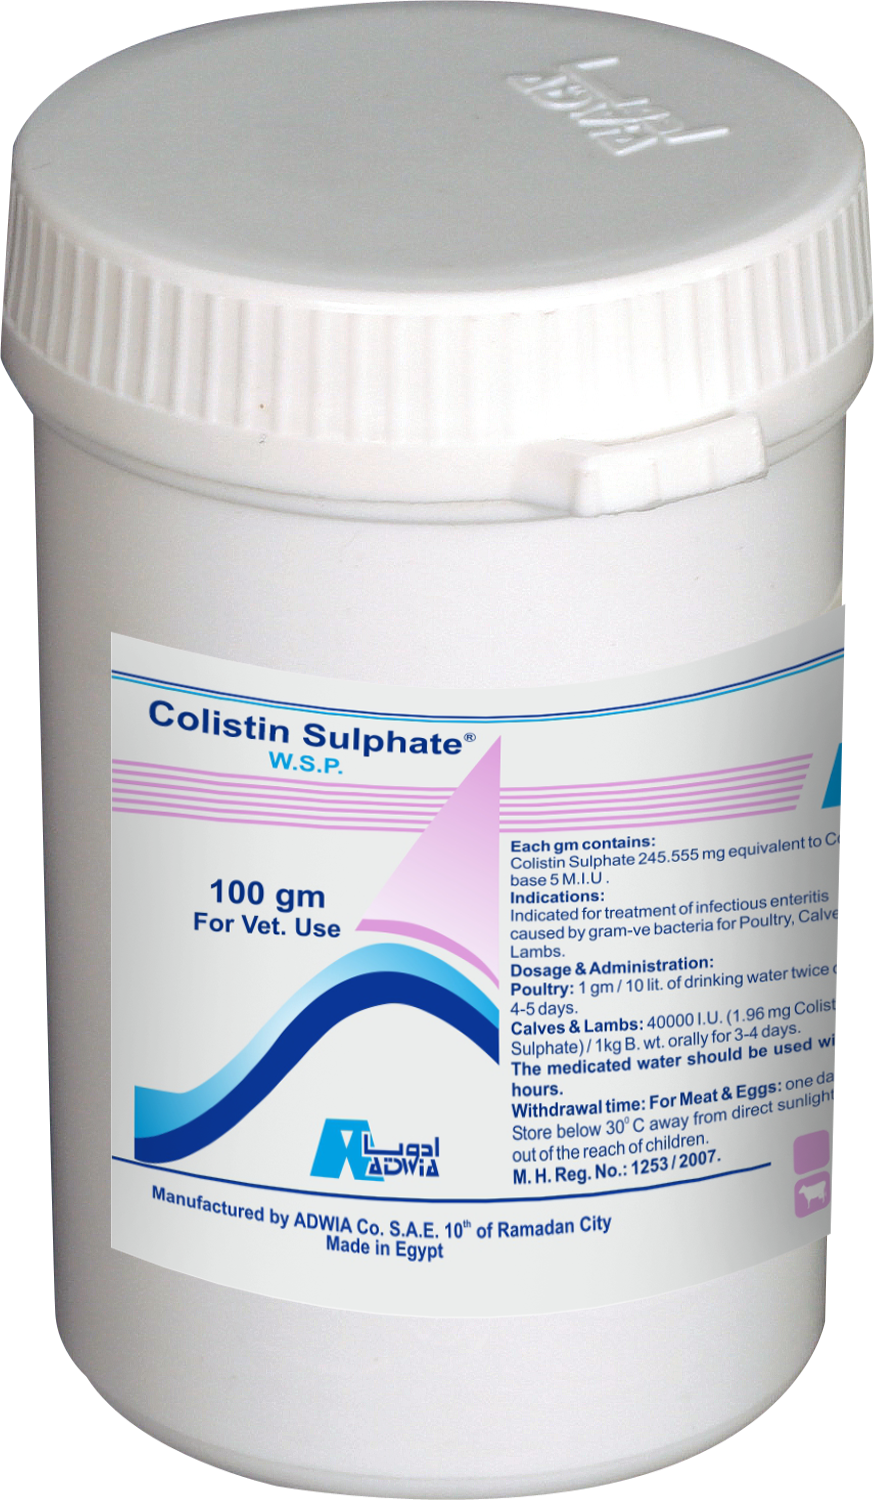  Colistin sulphate